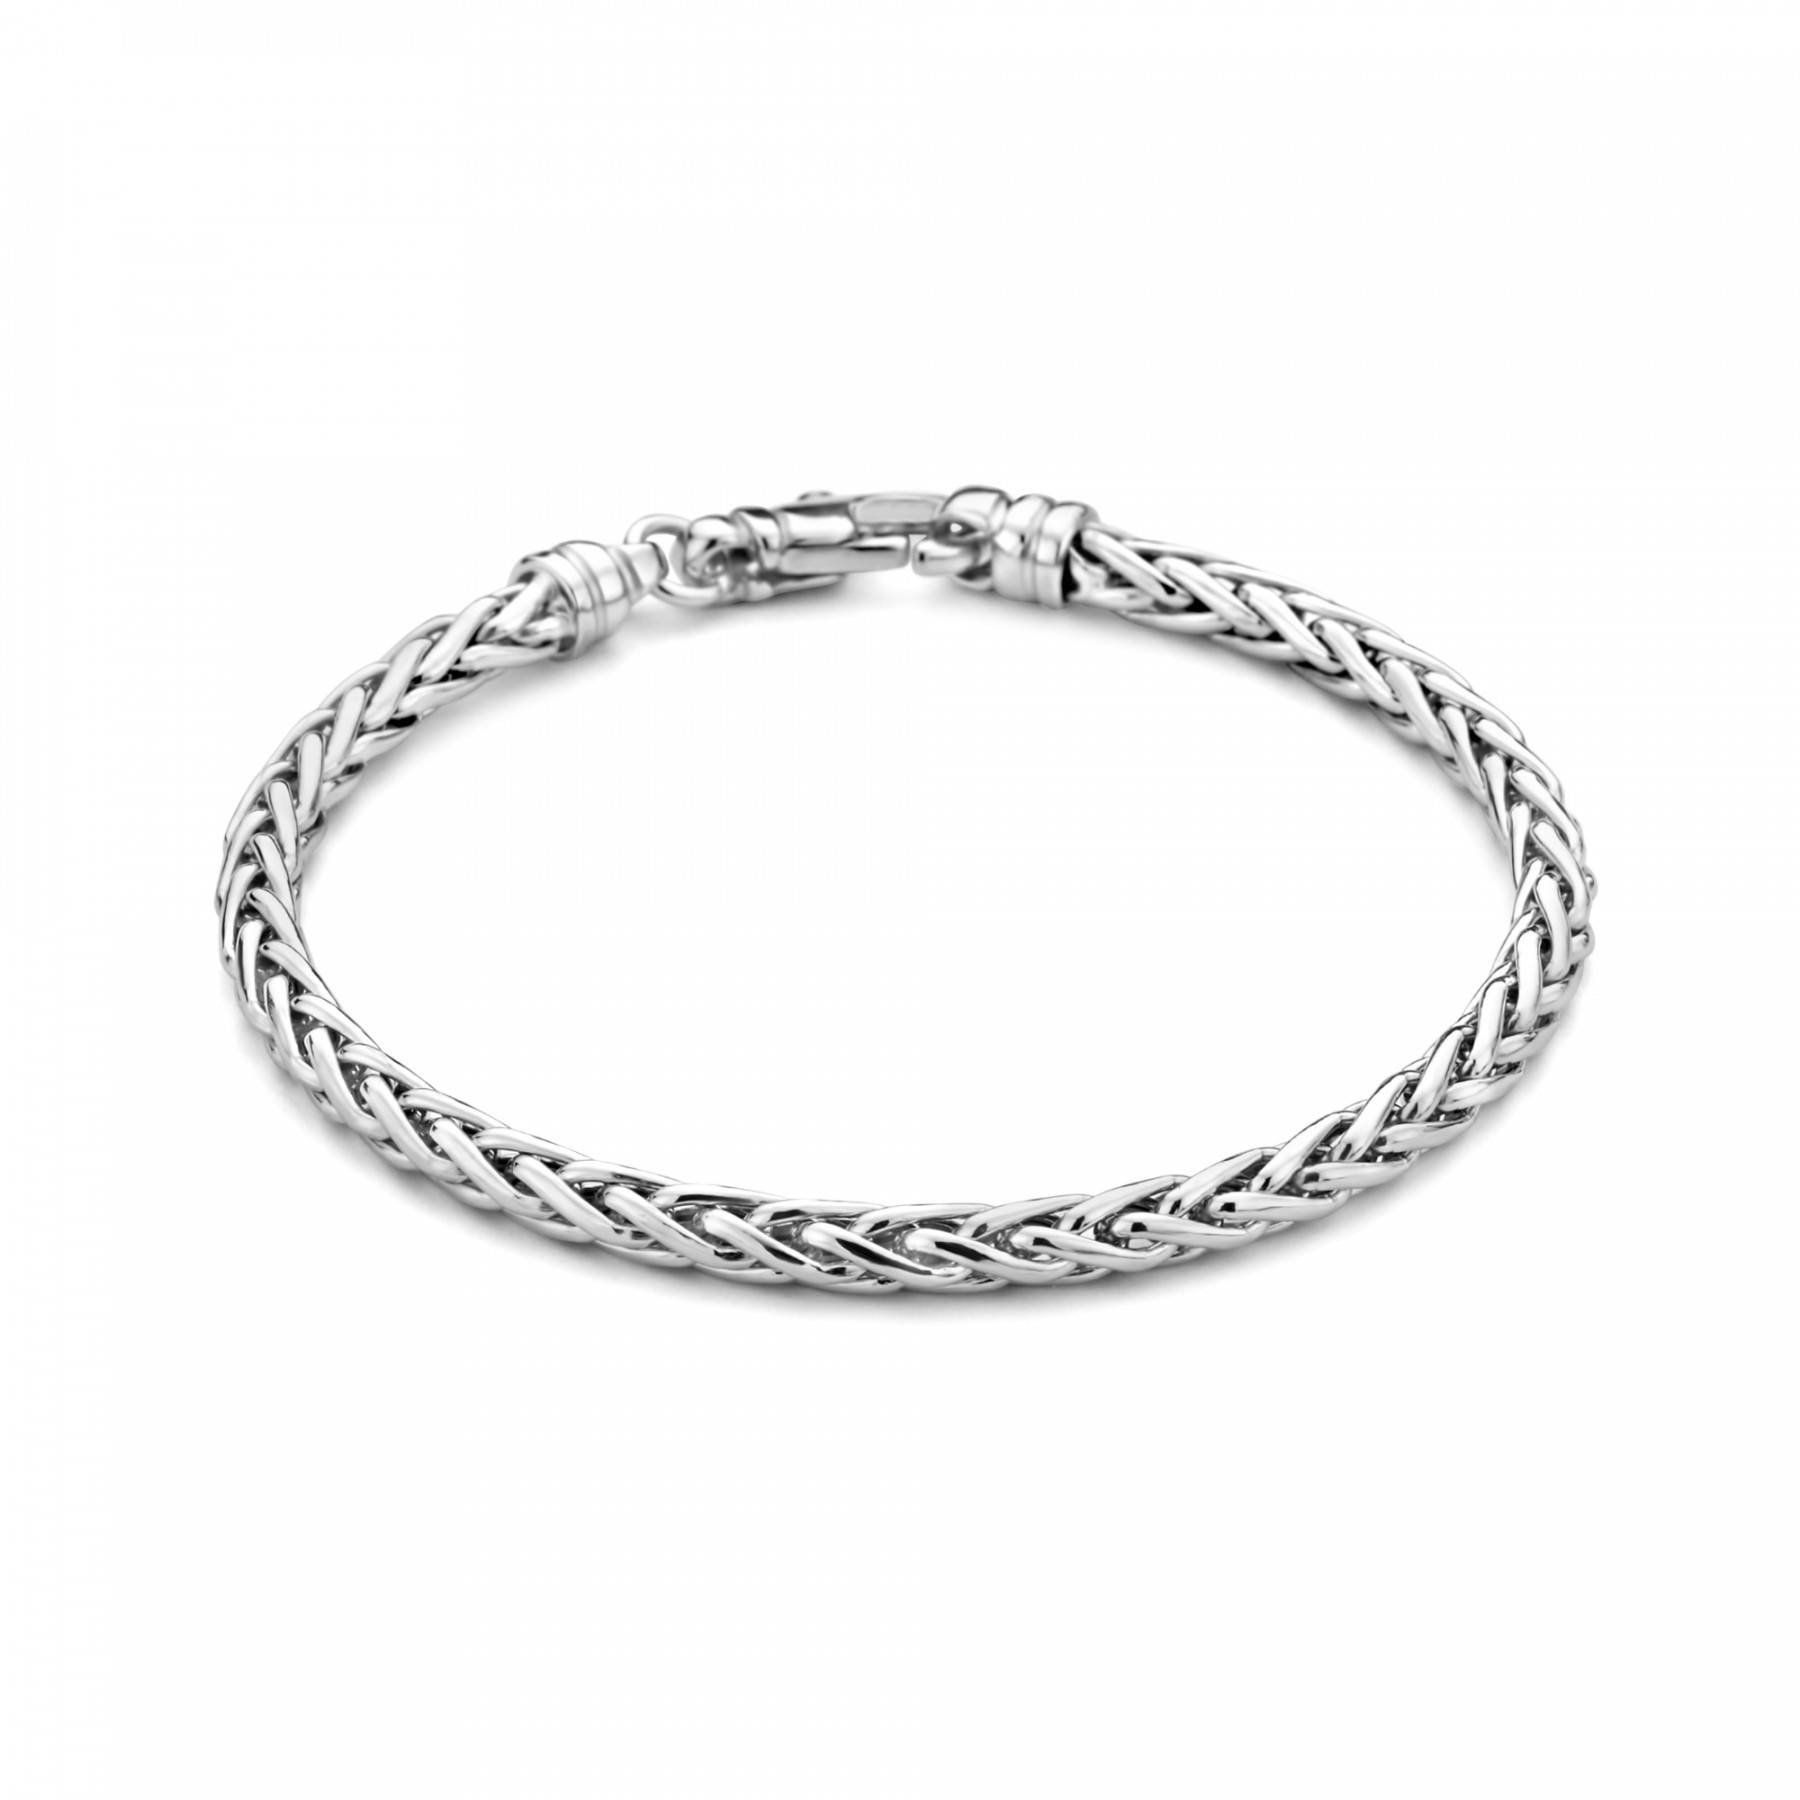 Emma Vieve 925 sterling silver bracelet